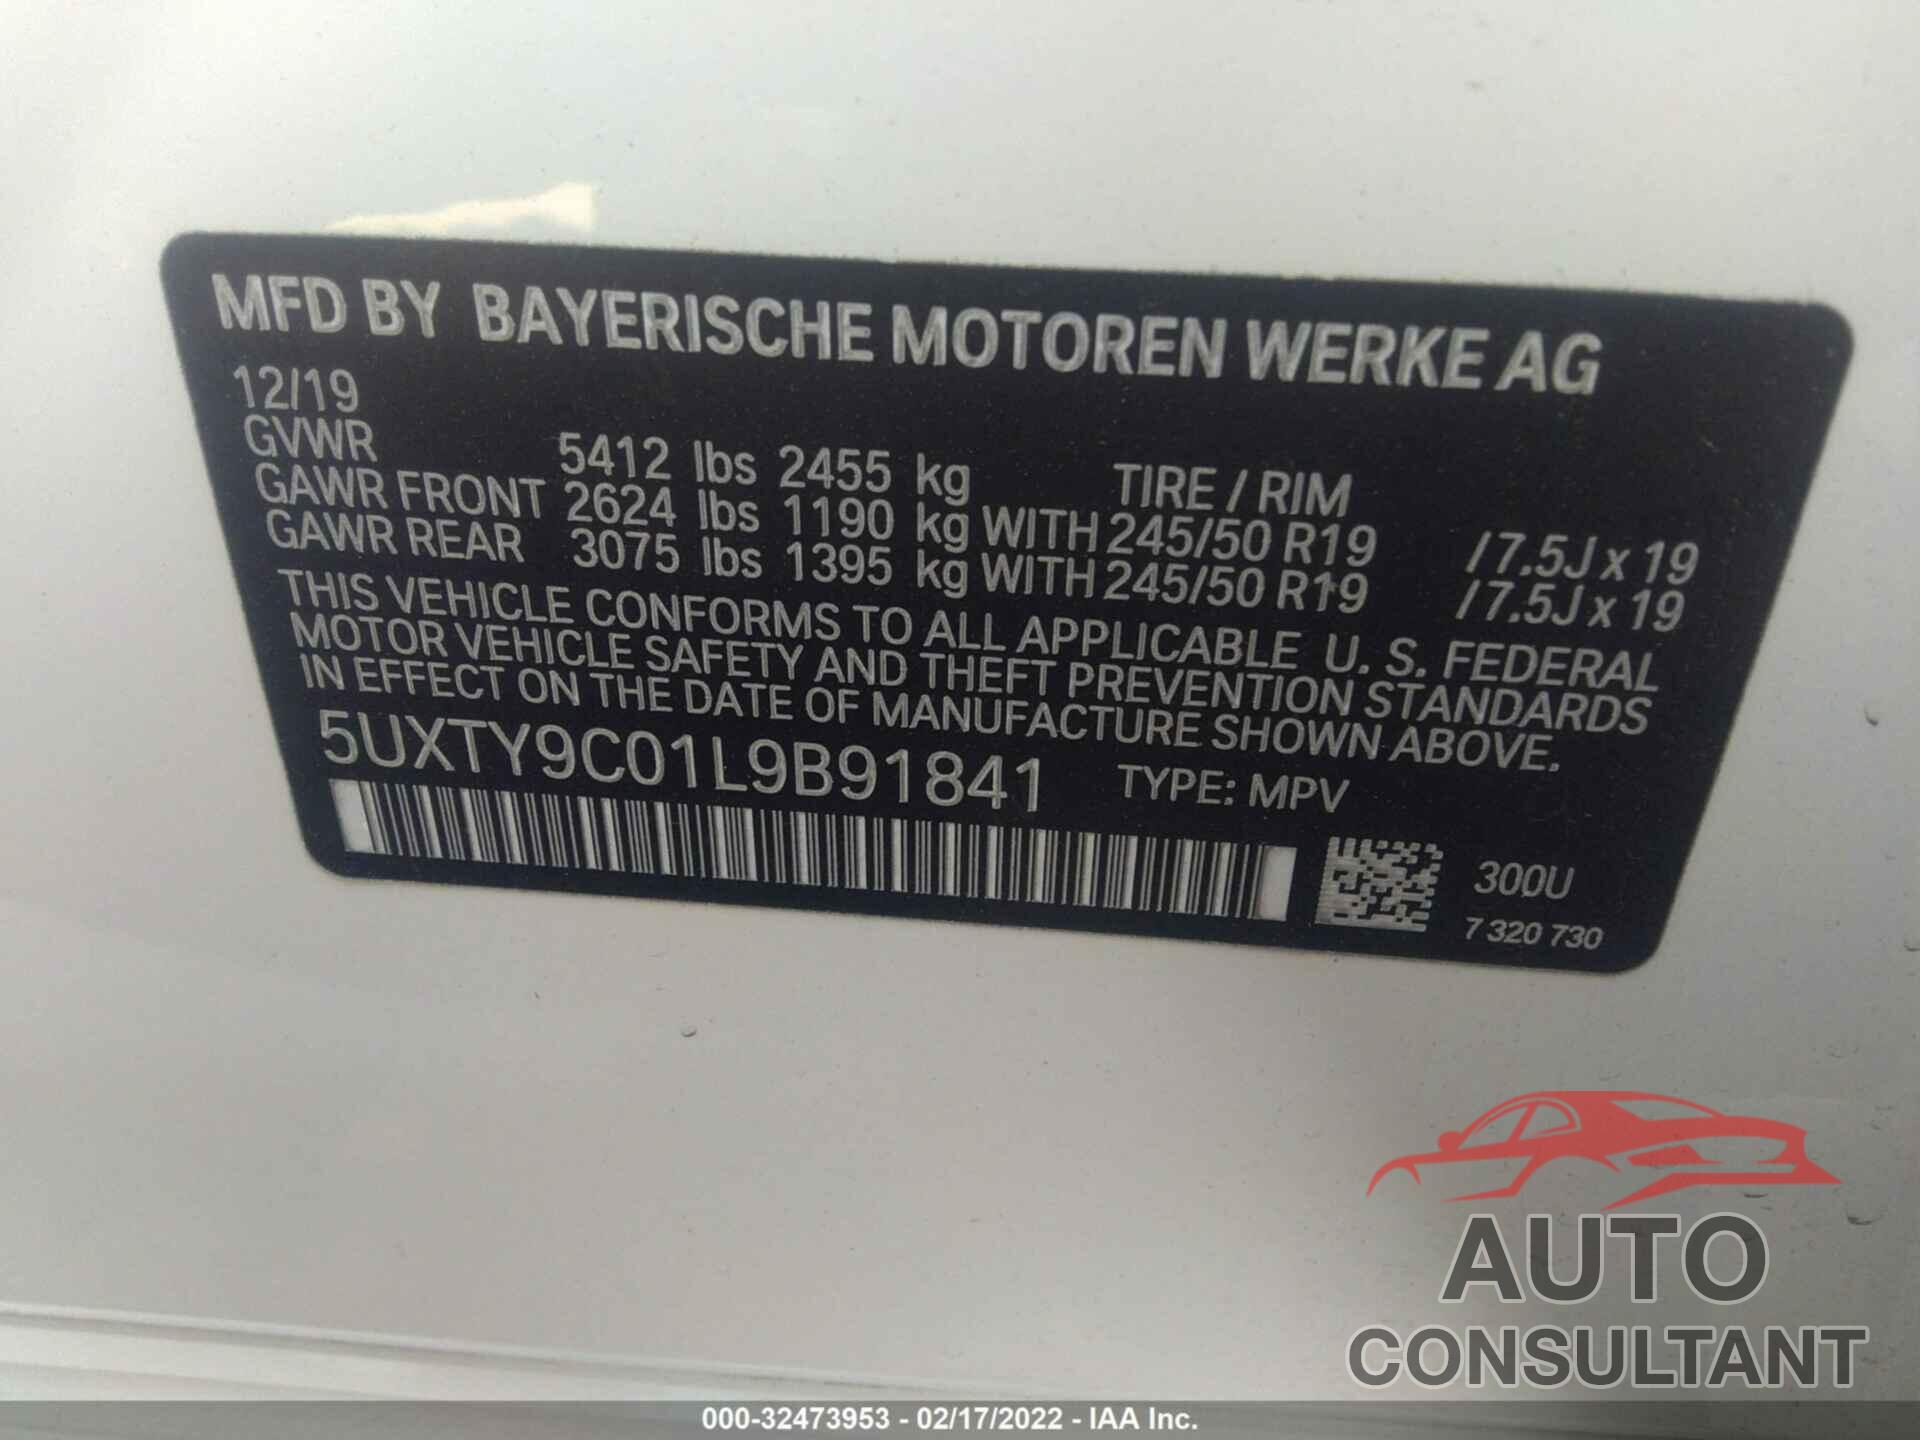 BMW X3 2020 - 5UXTY9C01L9B91841